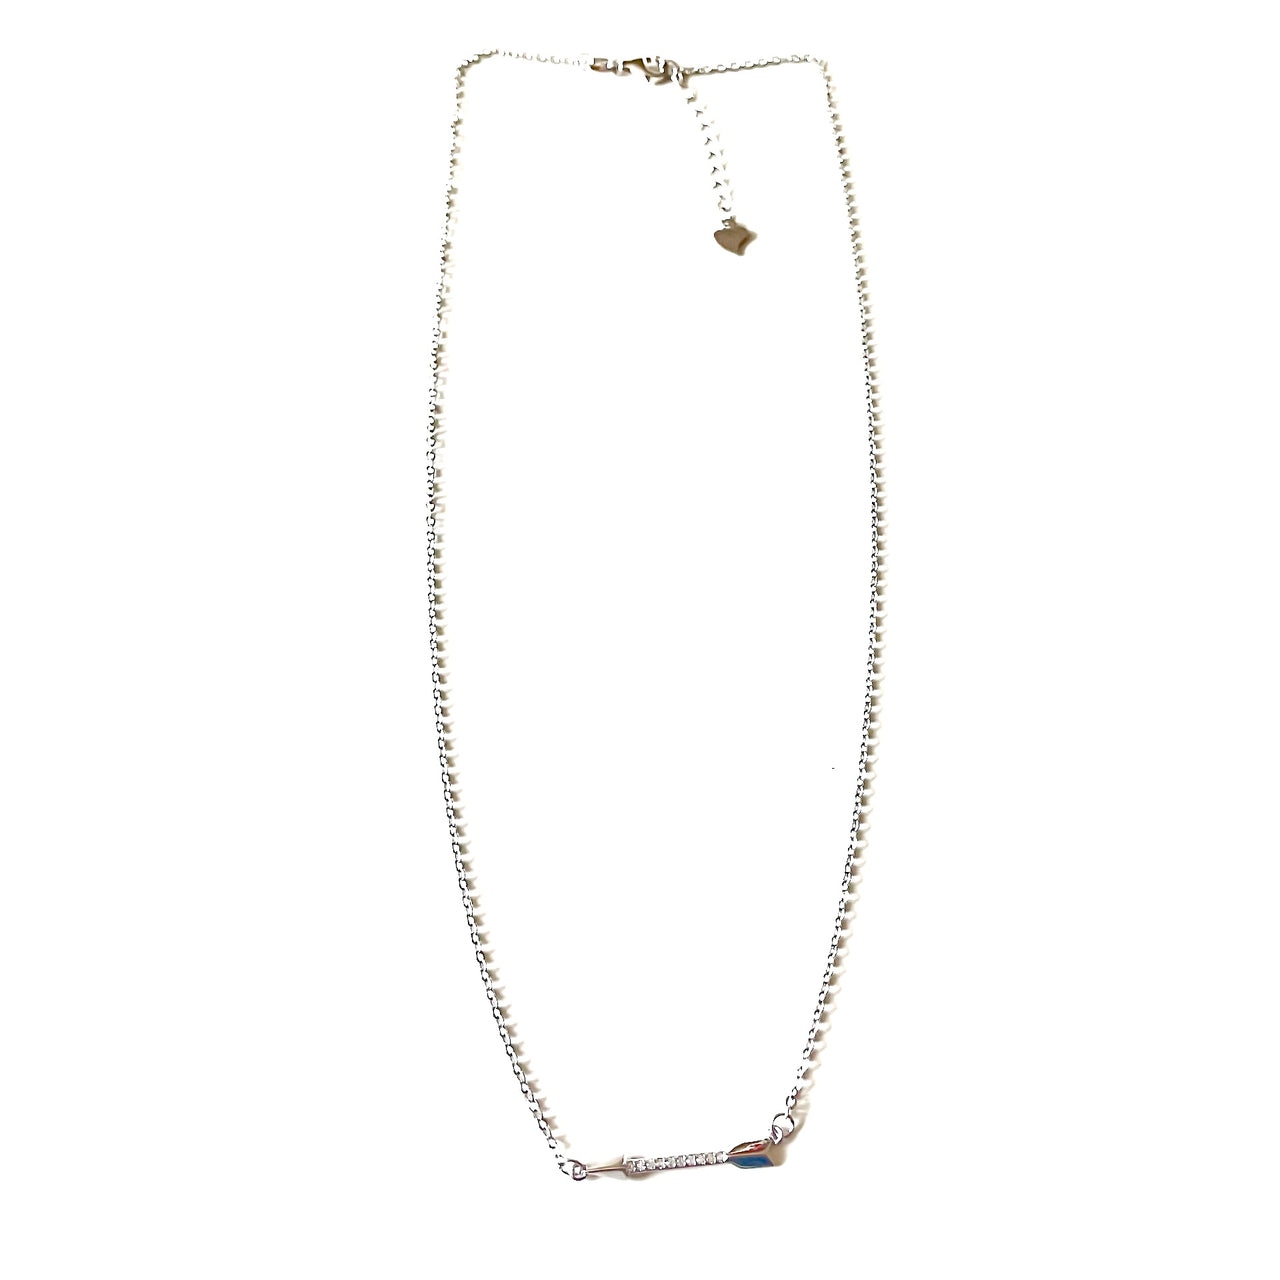 Espectacular collar extensible de plata de ley, con una flecha de plata 925 y circonitas blancas. Este collar es una pieza ideal y combinable con tu look favorito.